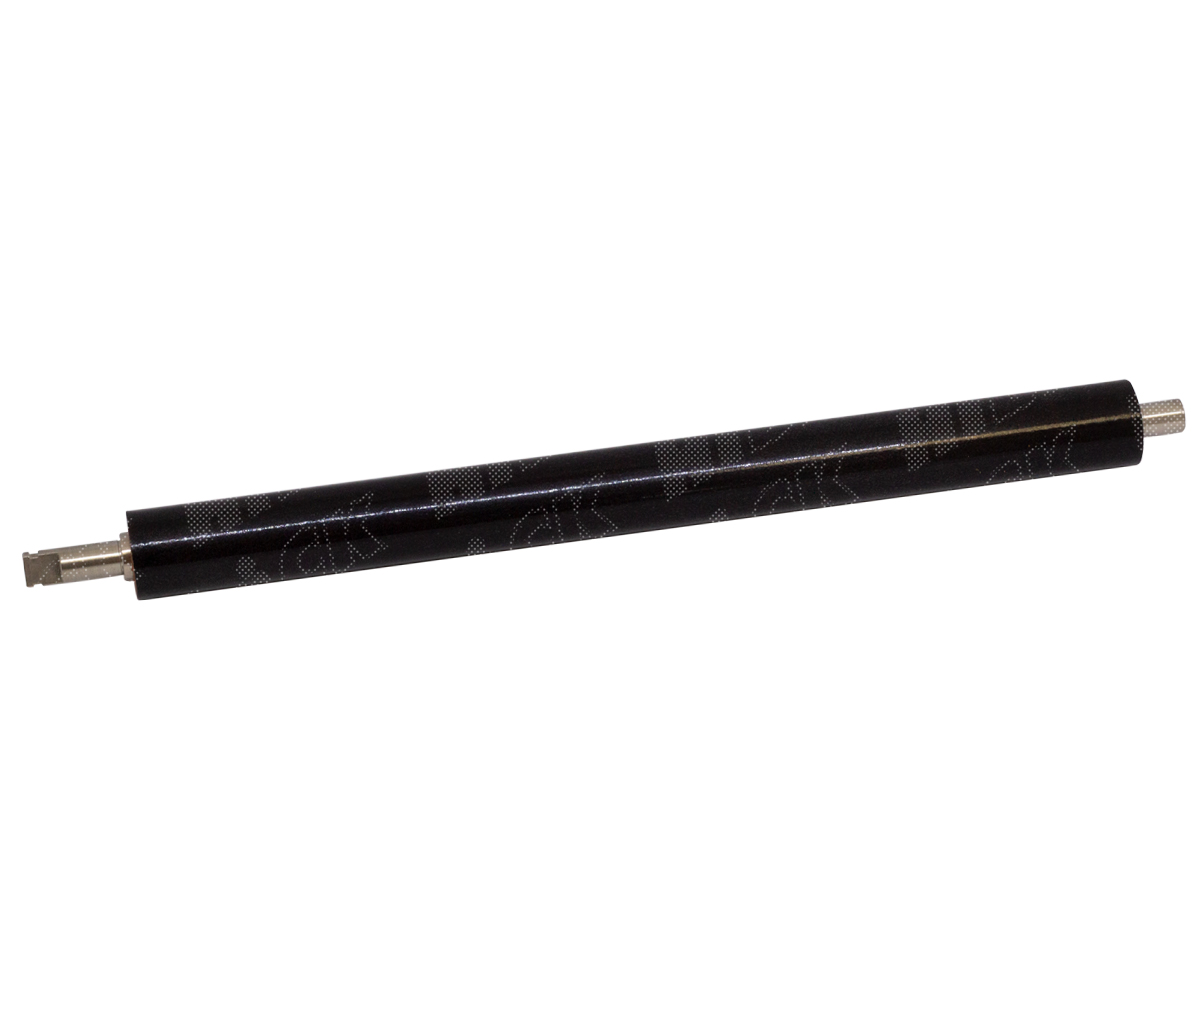 Вал резиновый нижний Hi-Black для HP LJ Pro M402/M426/427